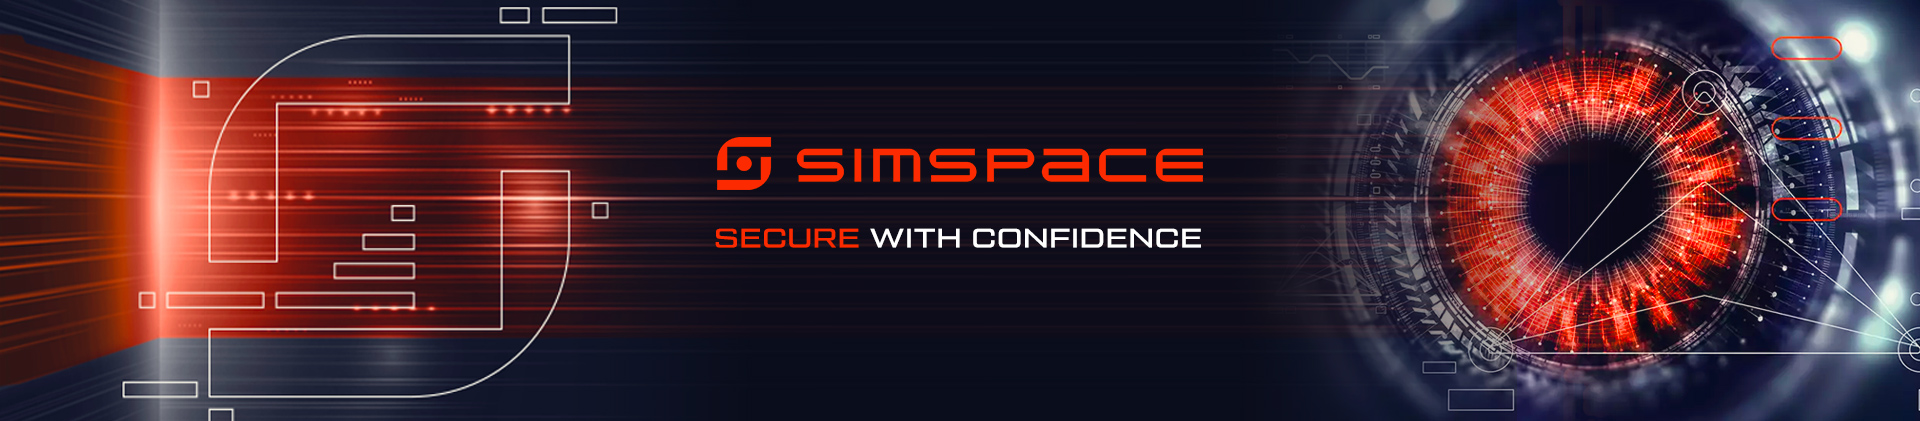 Jsme partnerem SimSpace